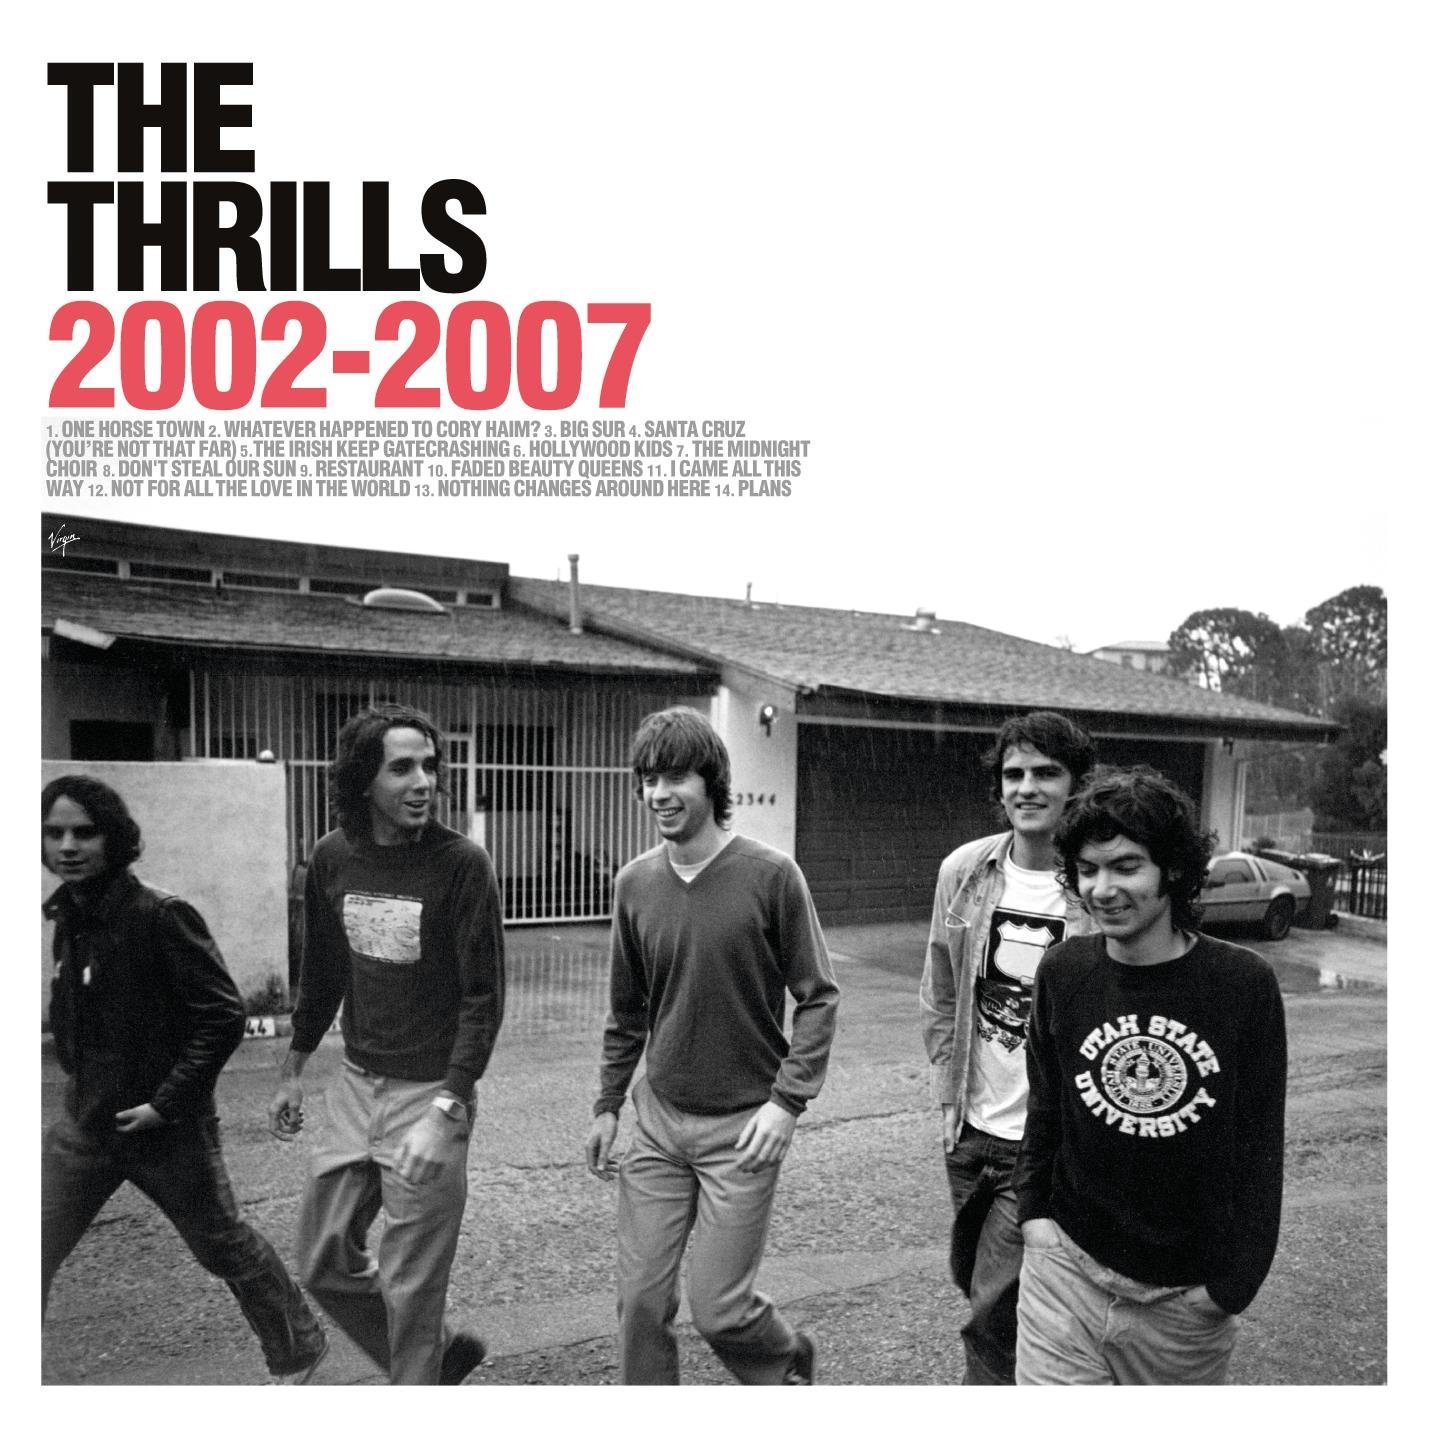 The Thrills 2002-2007